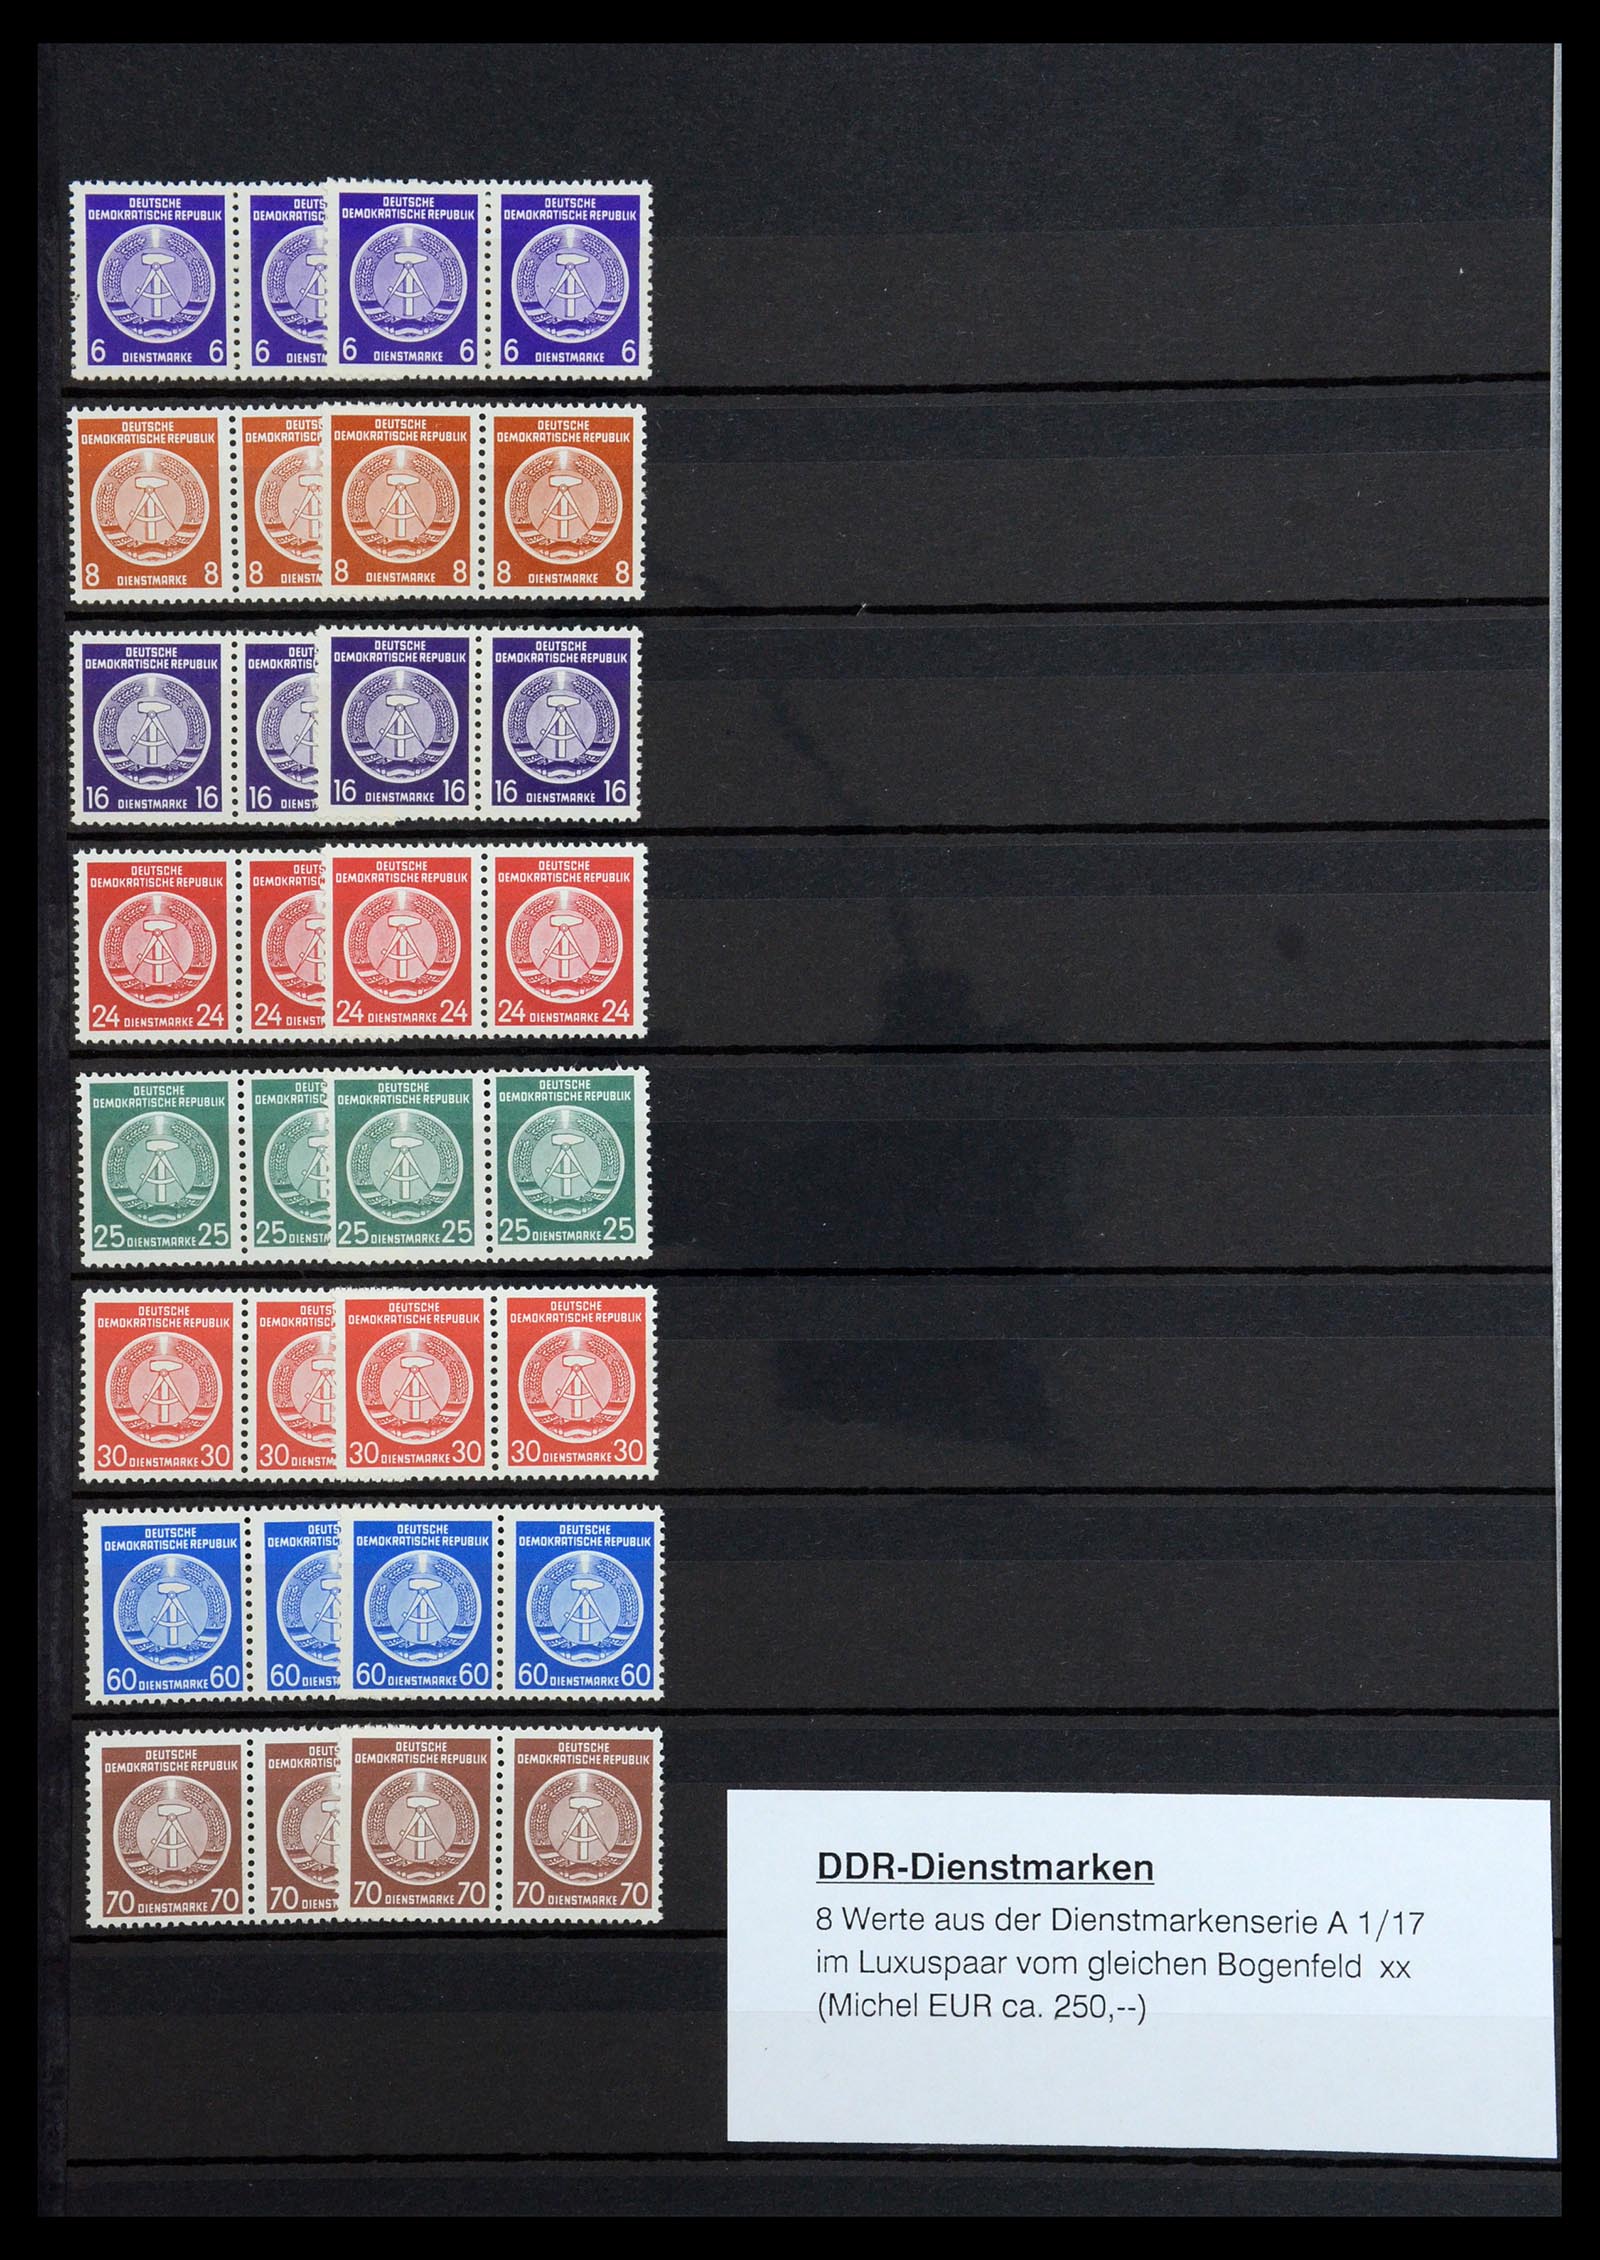 36466 042 - Postzegelverzameling 36466 DDR gespecialiseerd 1949-1986.